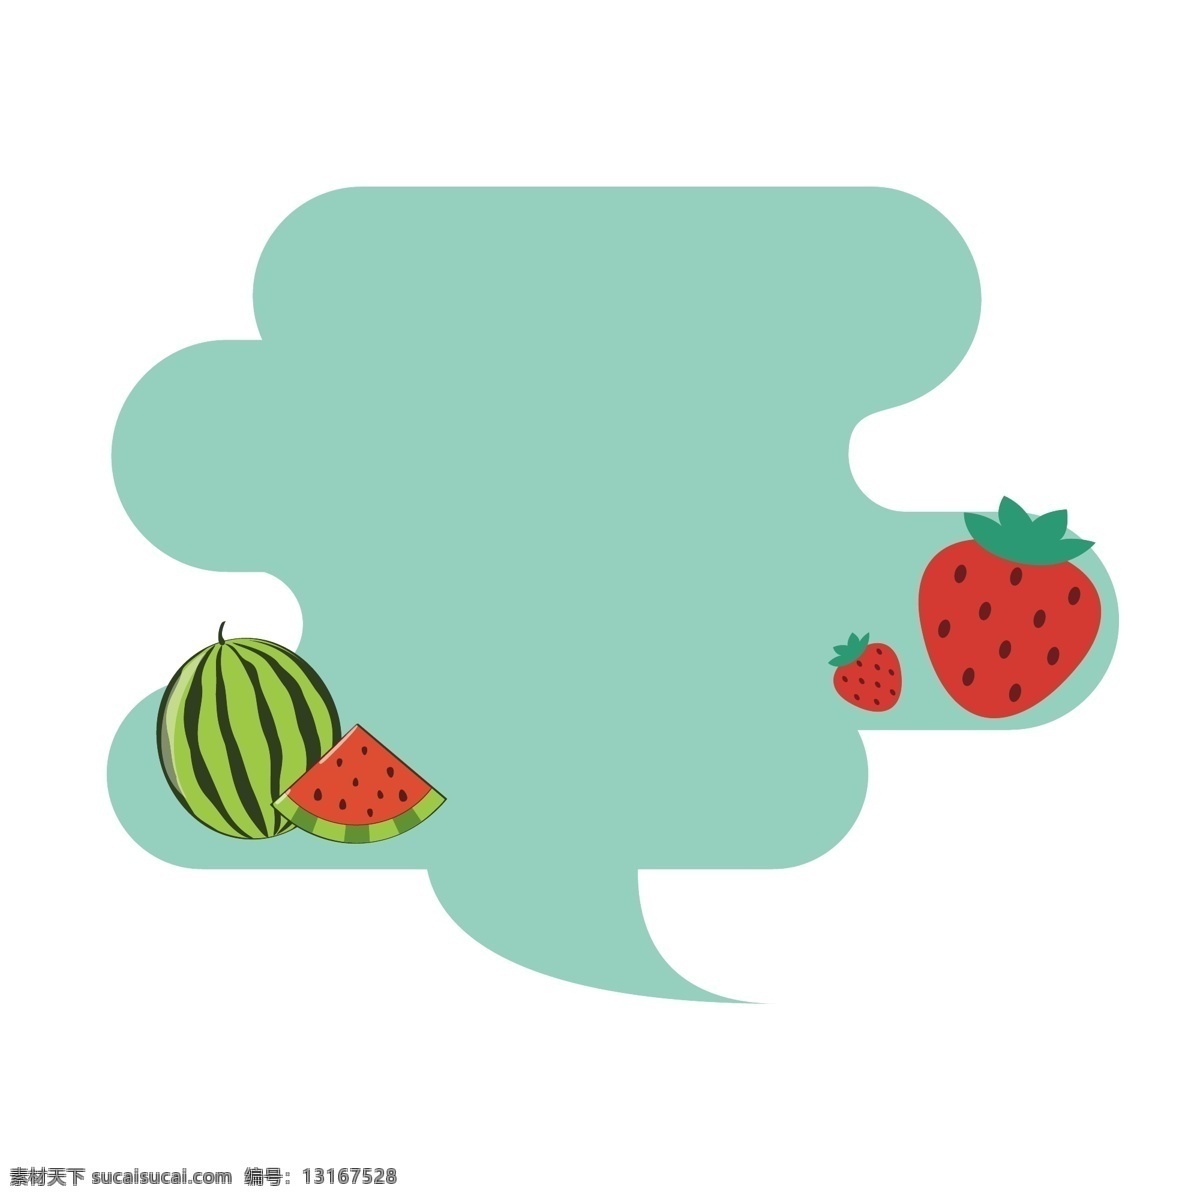 矢量 卡通 扁平化 绿色 云 水果 边框 矢量水果边框 卡通水果边框 水果边框 绿色云 草莓 西瓜